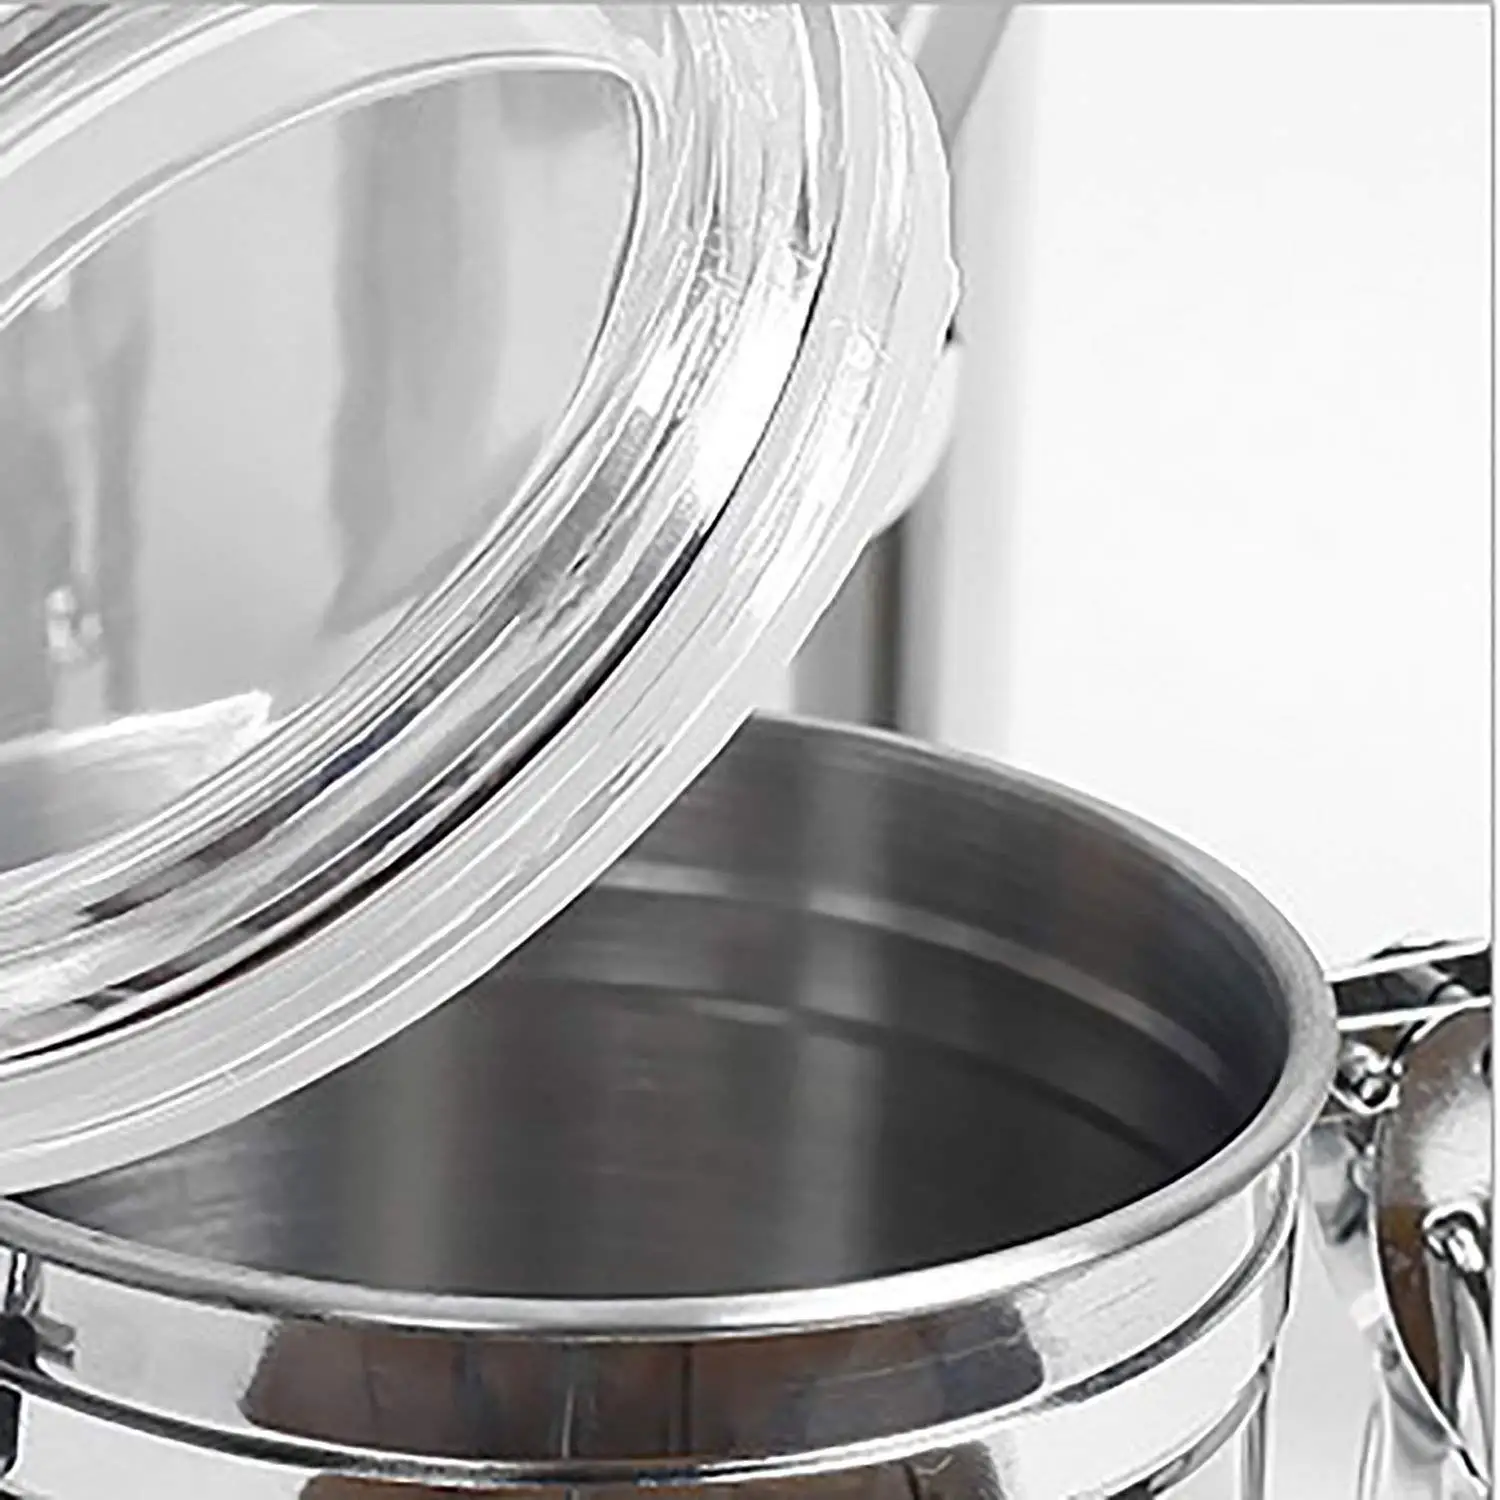 CHFL герметичные контейнеры наборы для кухни из нержавеющей стали-красивые для кухонной стойки, маленькие 32 унции, хранение пищи содержит